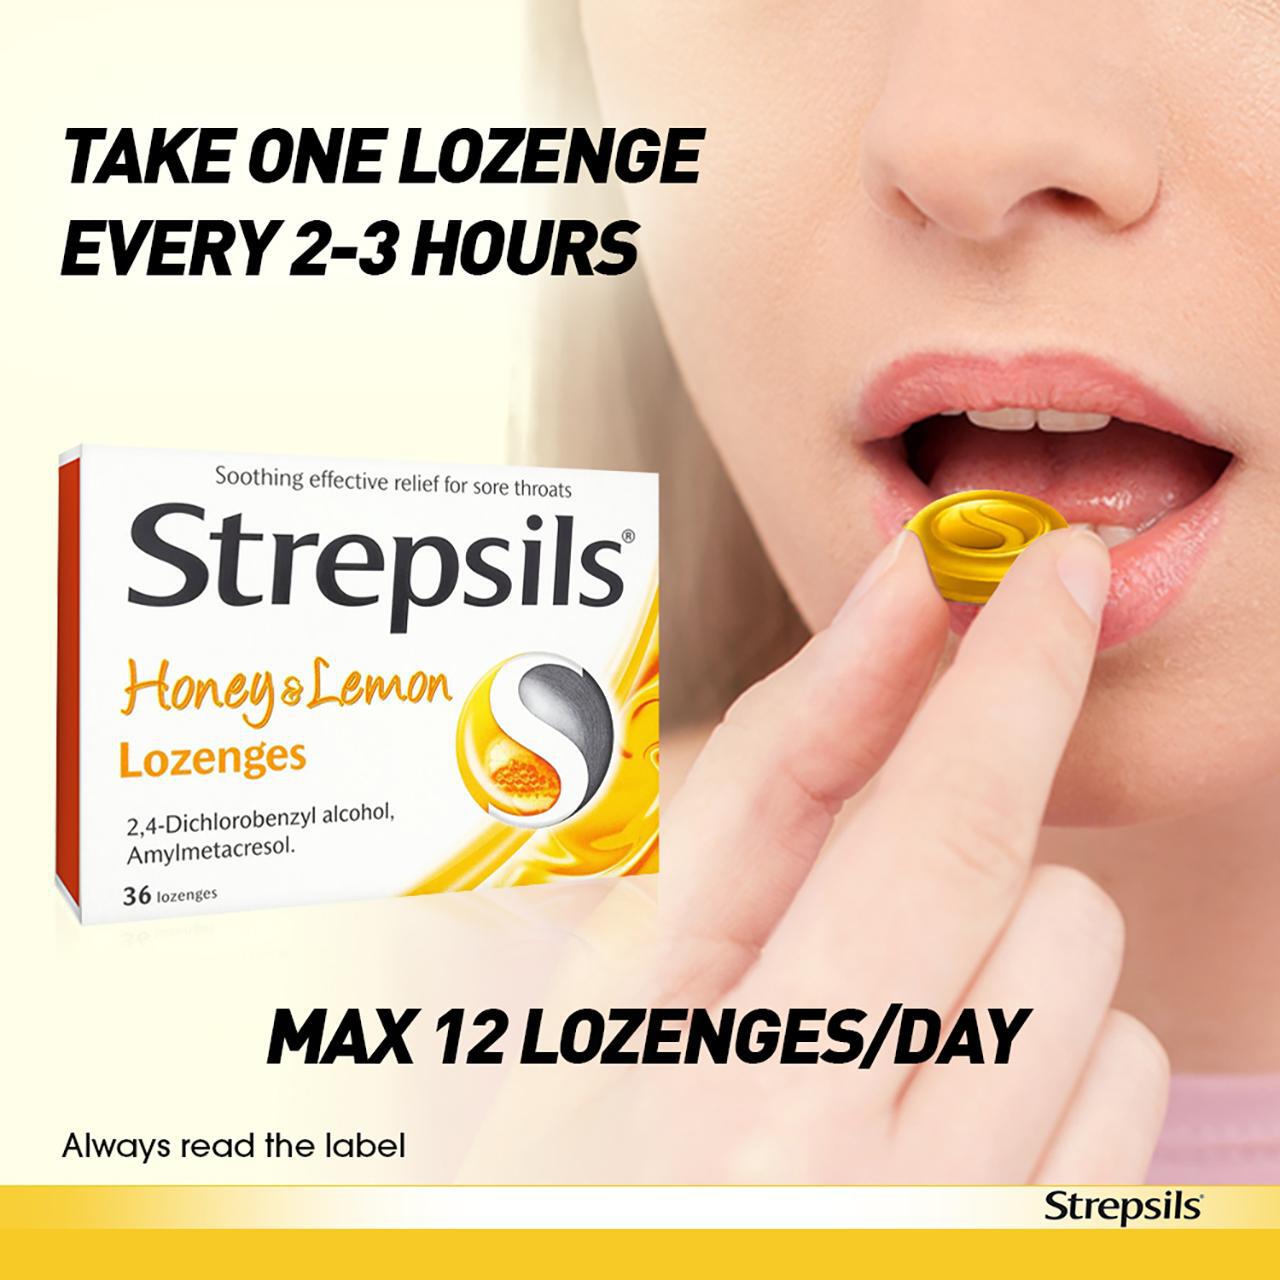 Strepsils Honey & Lemon Lozenges for Sore Throat 36 per pack